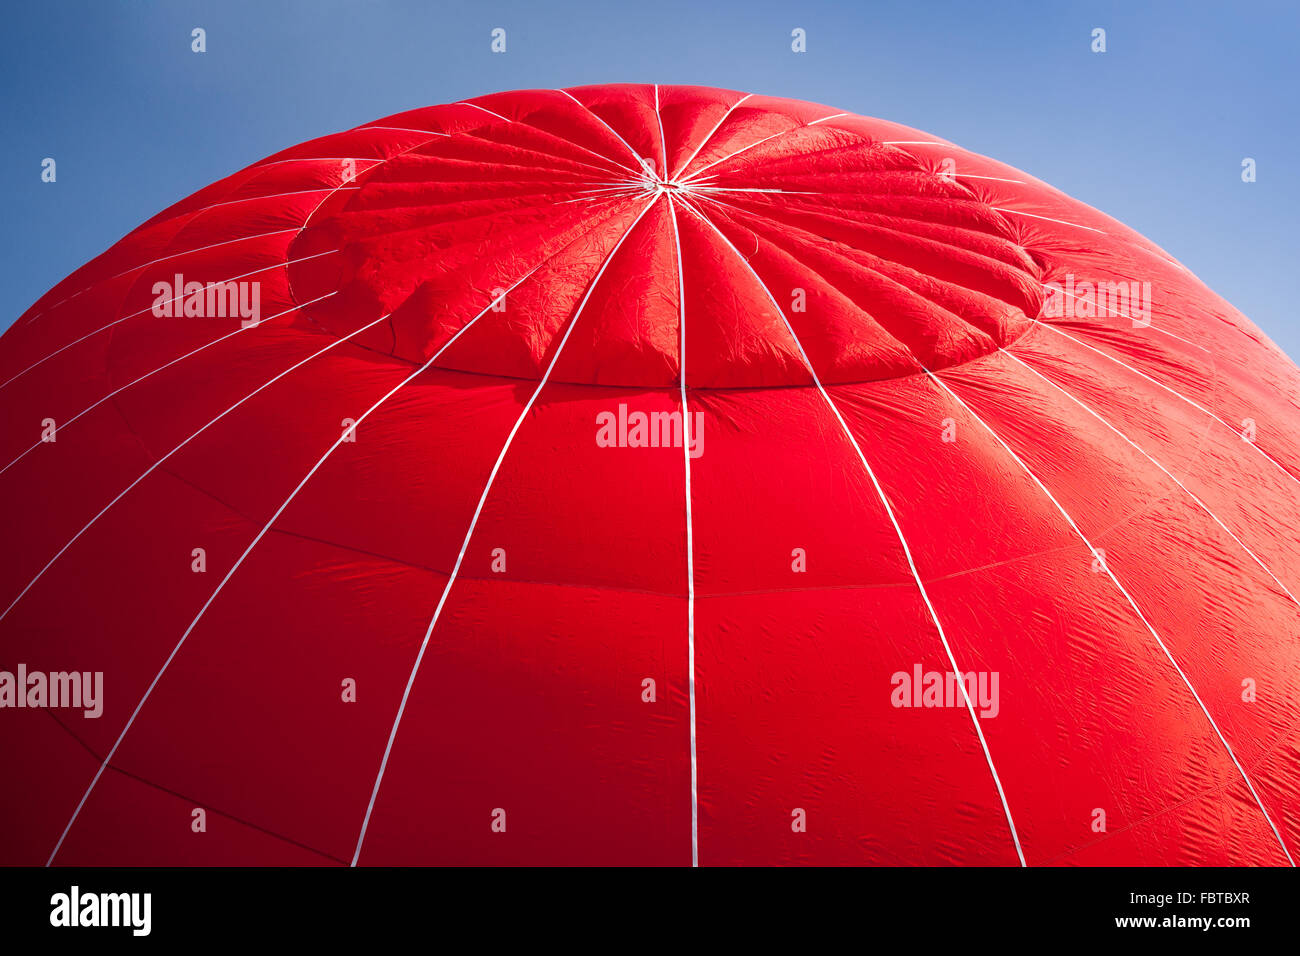 Tettoia rossa di aria calda palloncino gonfiato contro un luminoso cielo blu Foto Stock